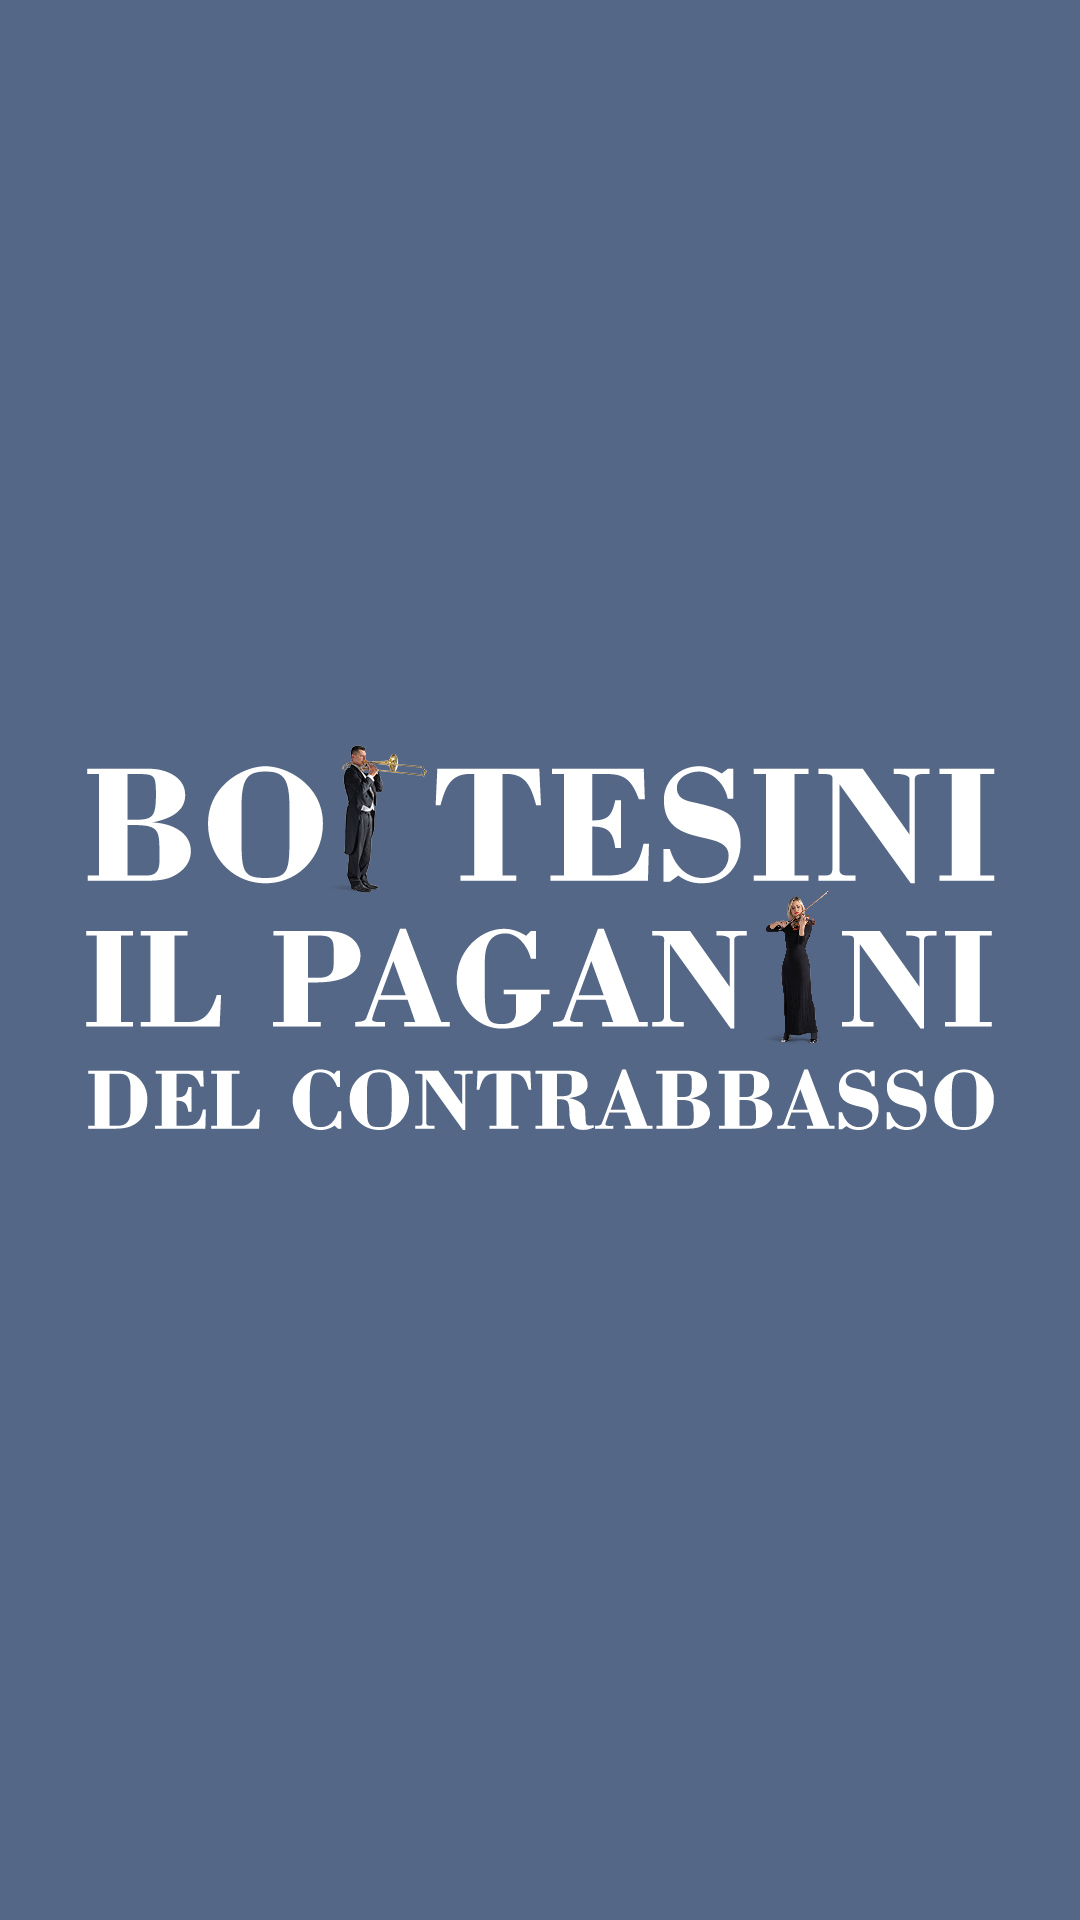 Bottesini, Il Paganini del Contrabbasso